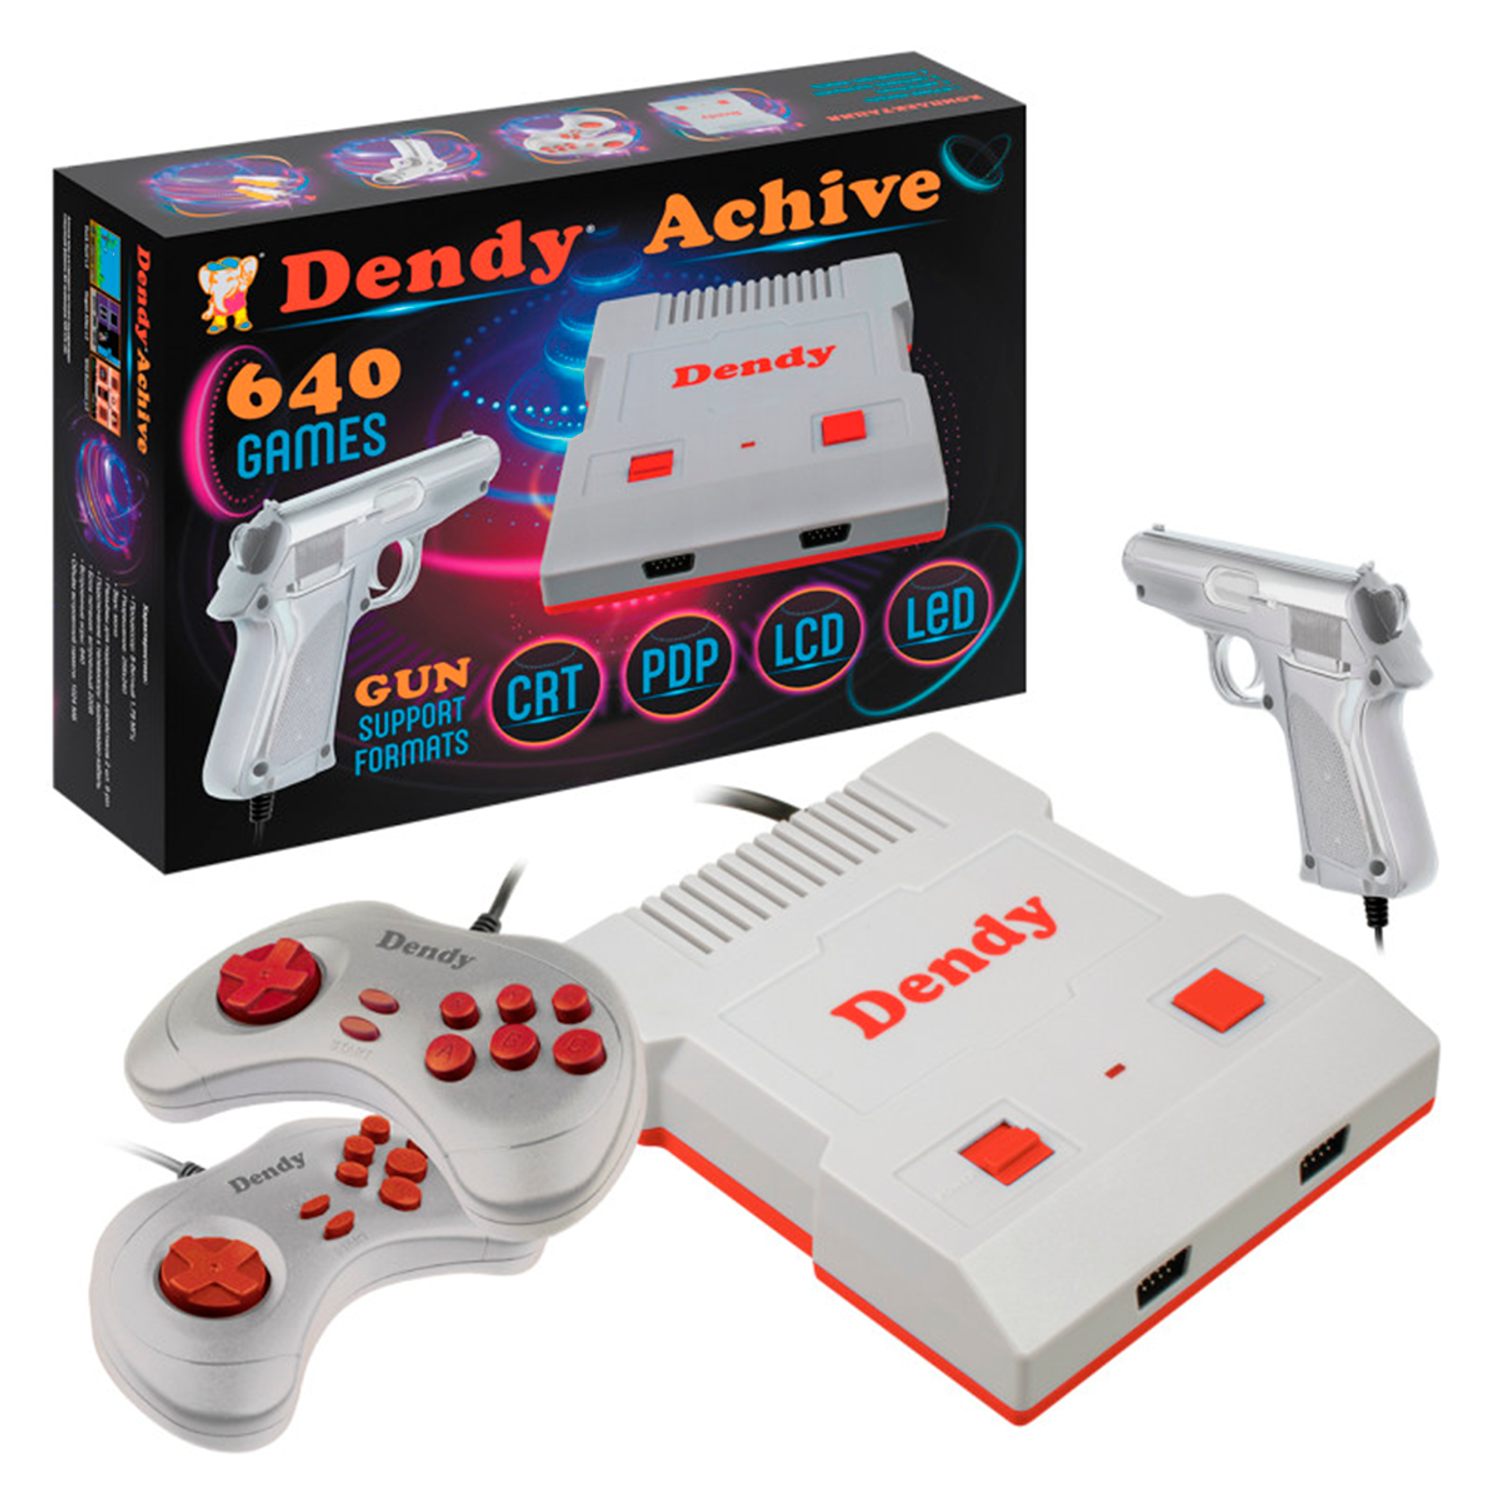 Игровая приставка Dendy Achive 640 игр и световой пистолет серая - фото 1